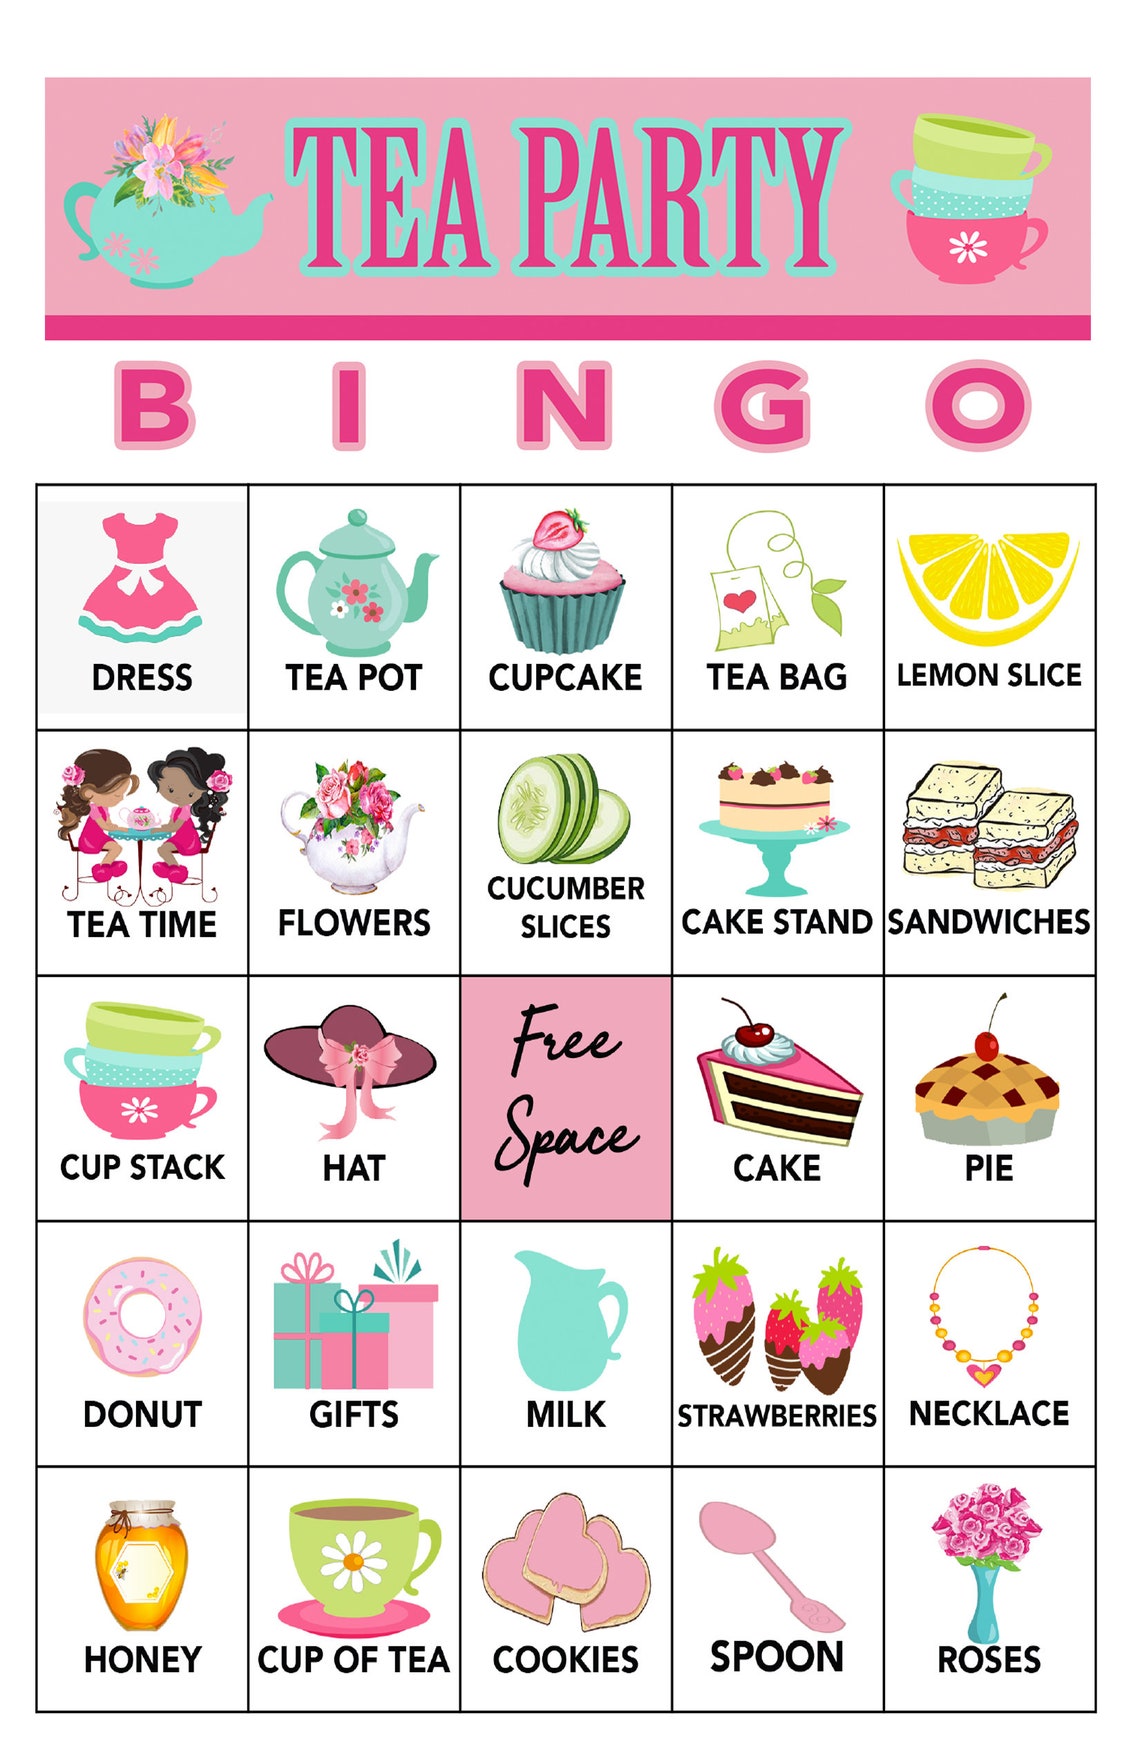 tea-party-bingo-30-cards-download-bingo-games-printable-etsy